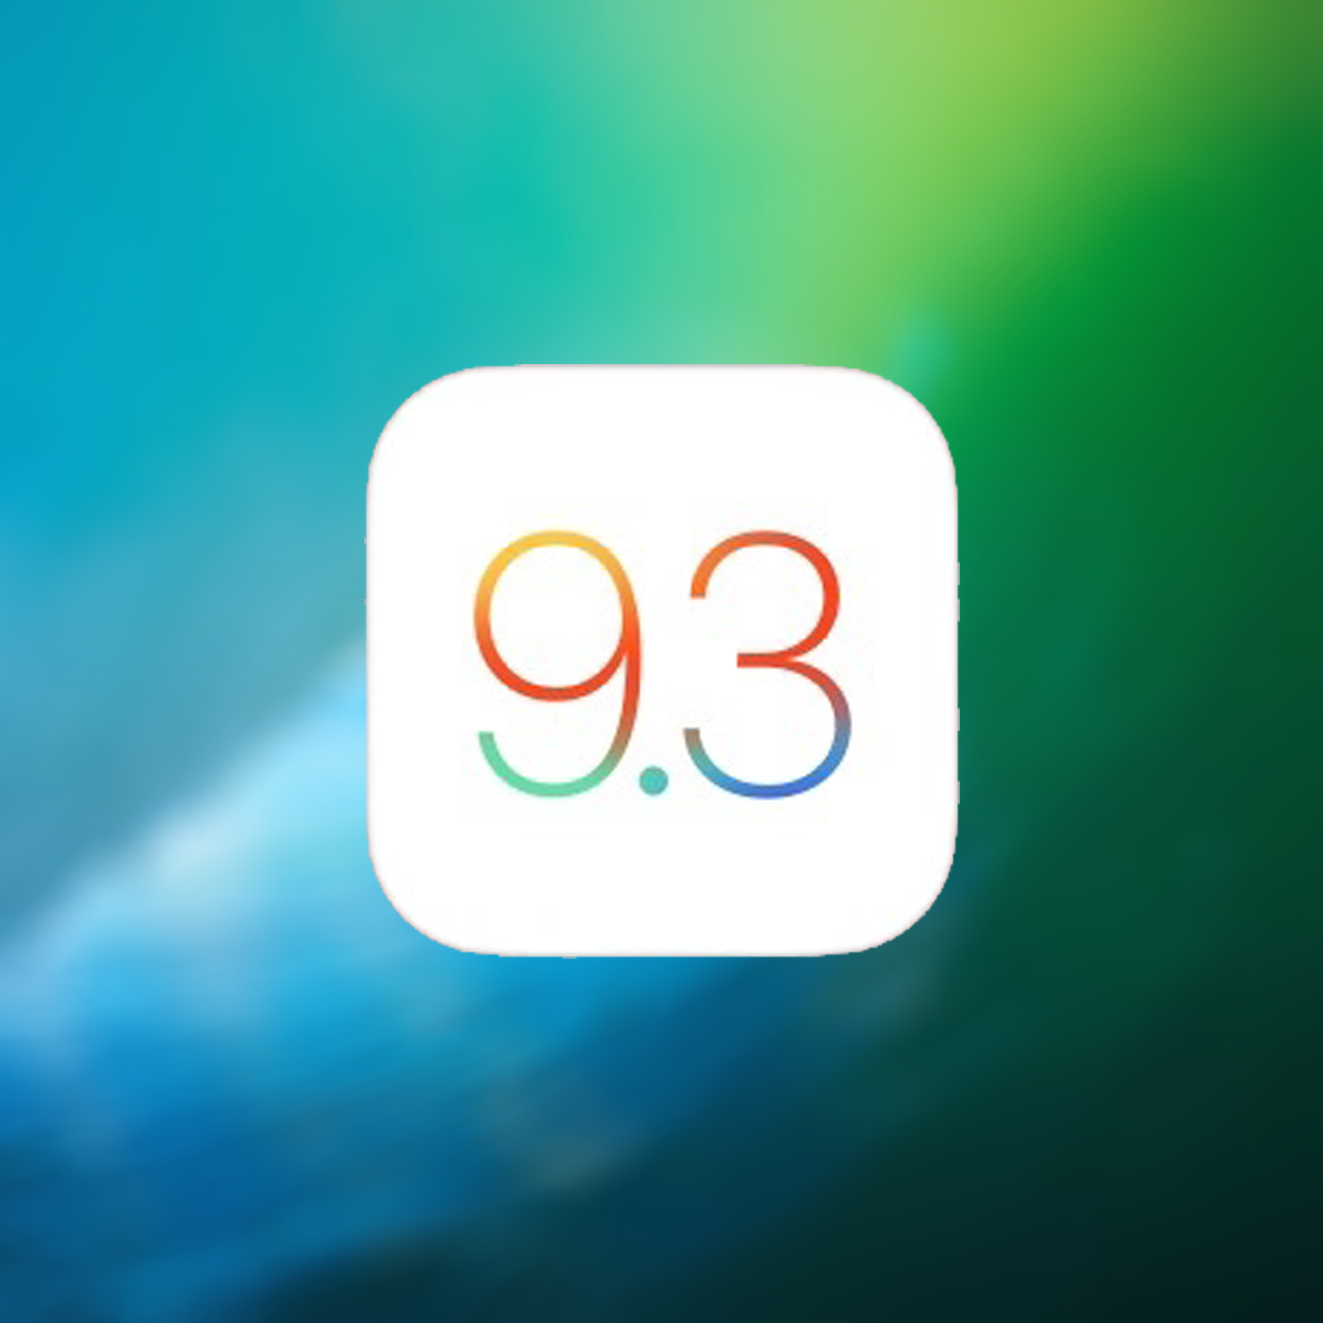 iOS 9.3.1 update nu beschikbaar